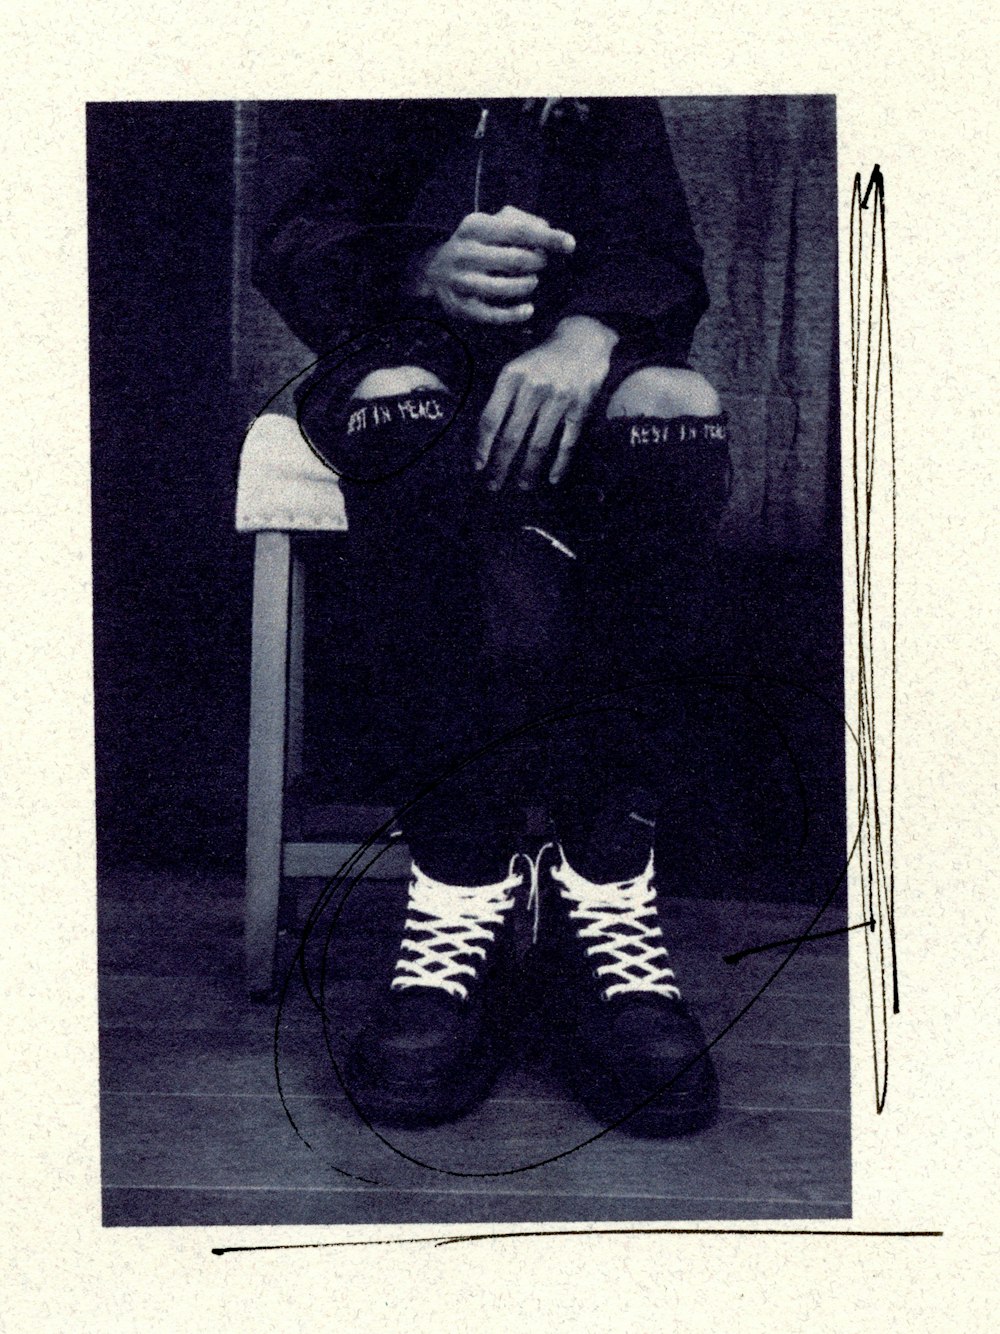 검은 재킷과 흑백 줄무늬 바지를 입은 남자가 흰색 의자에 앉아 있다